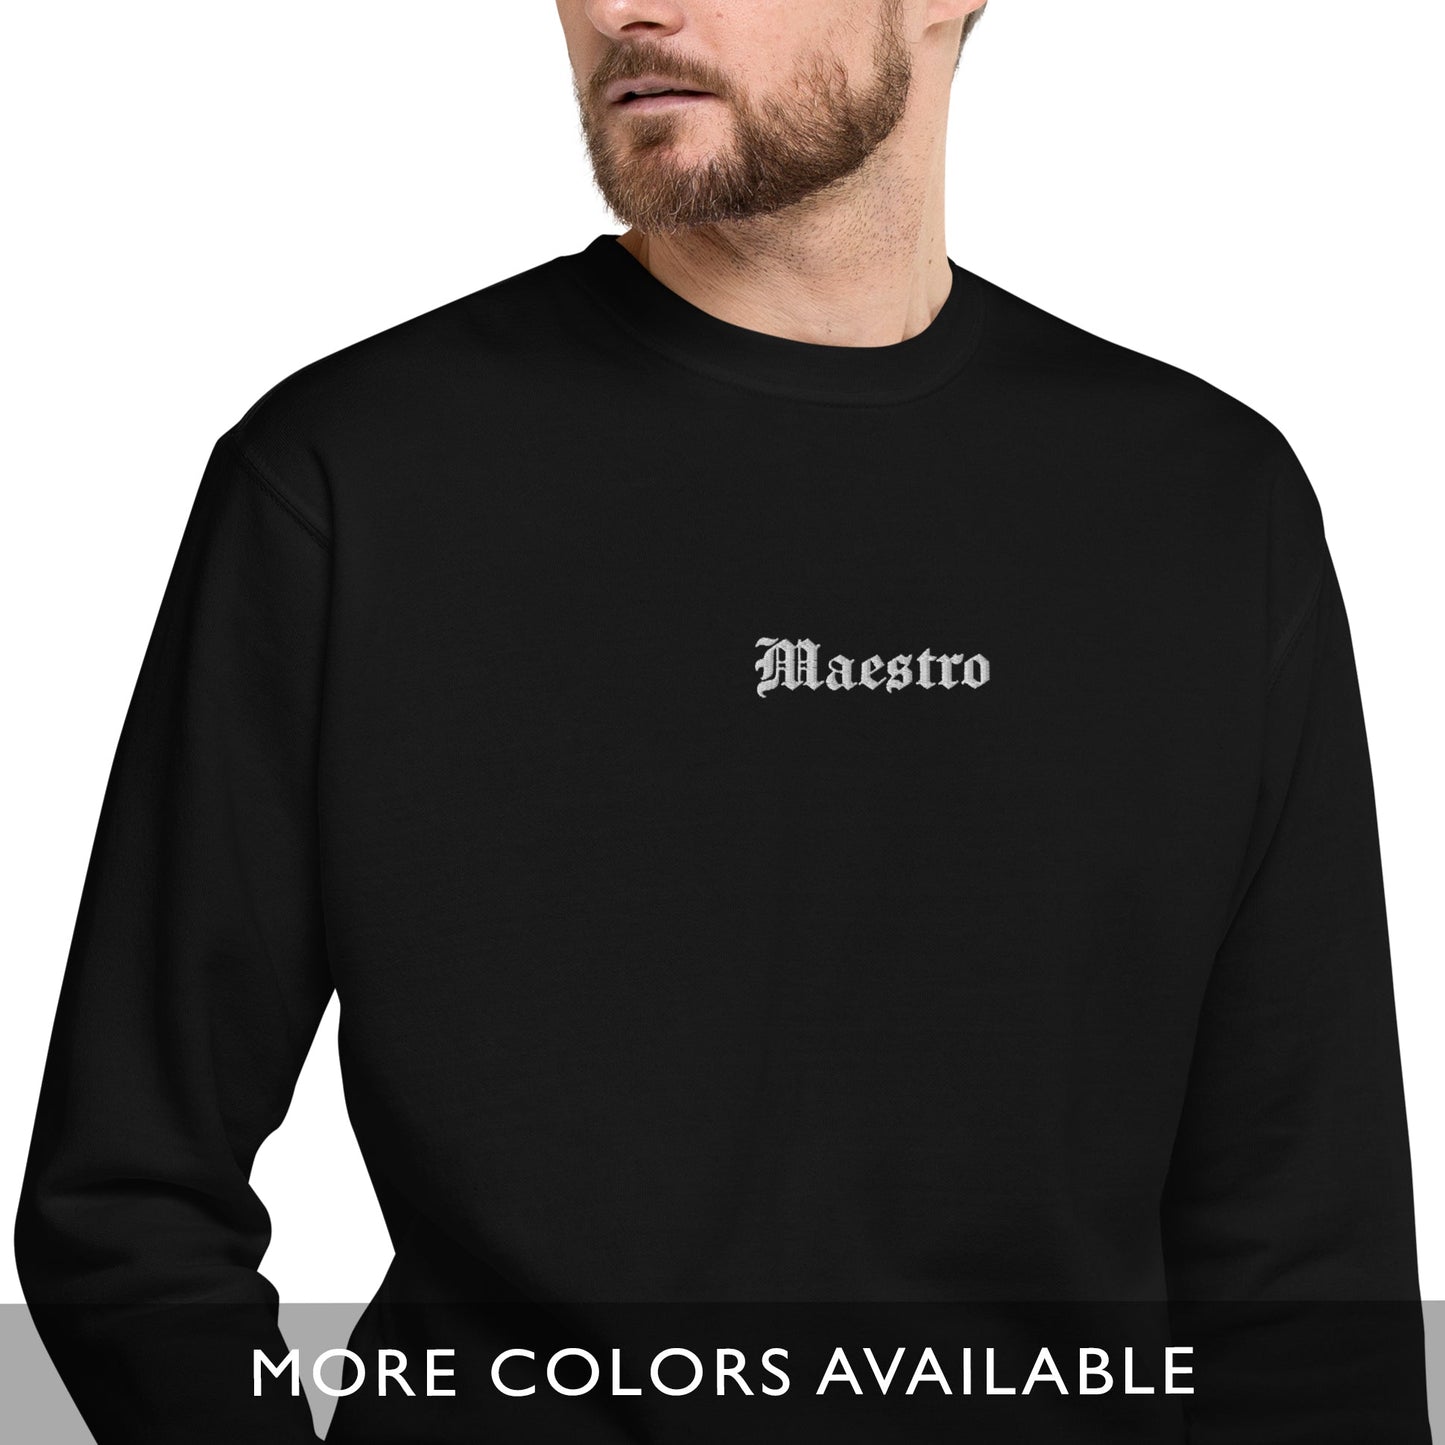 Maestro (Teacher) - Embroidered Premium Sweatshirt